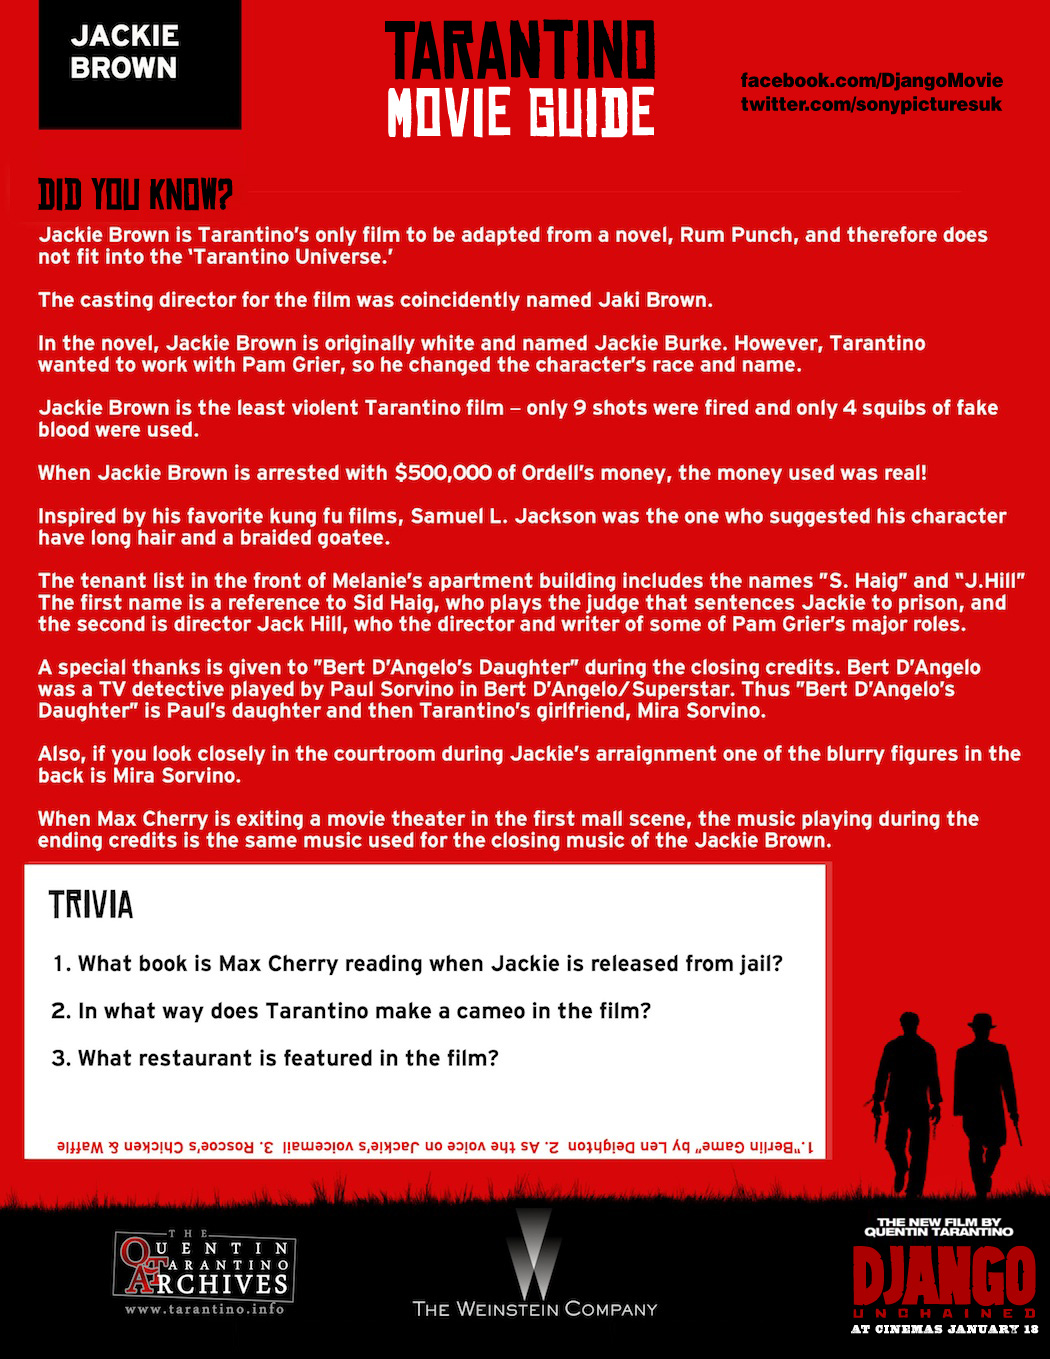 Tarantino Movie Guide – Jackie Brown